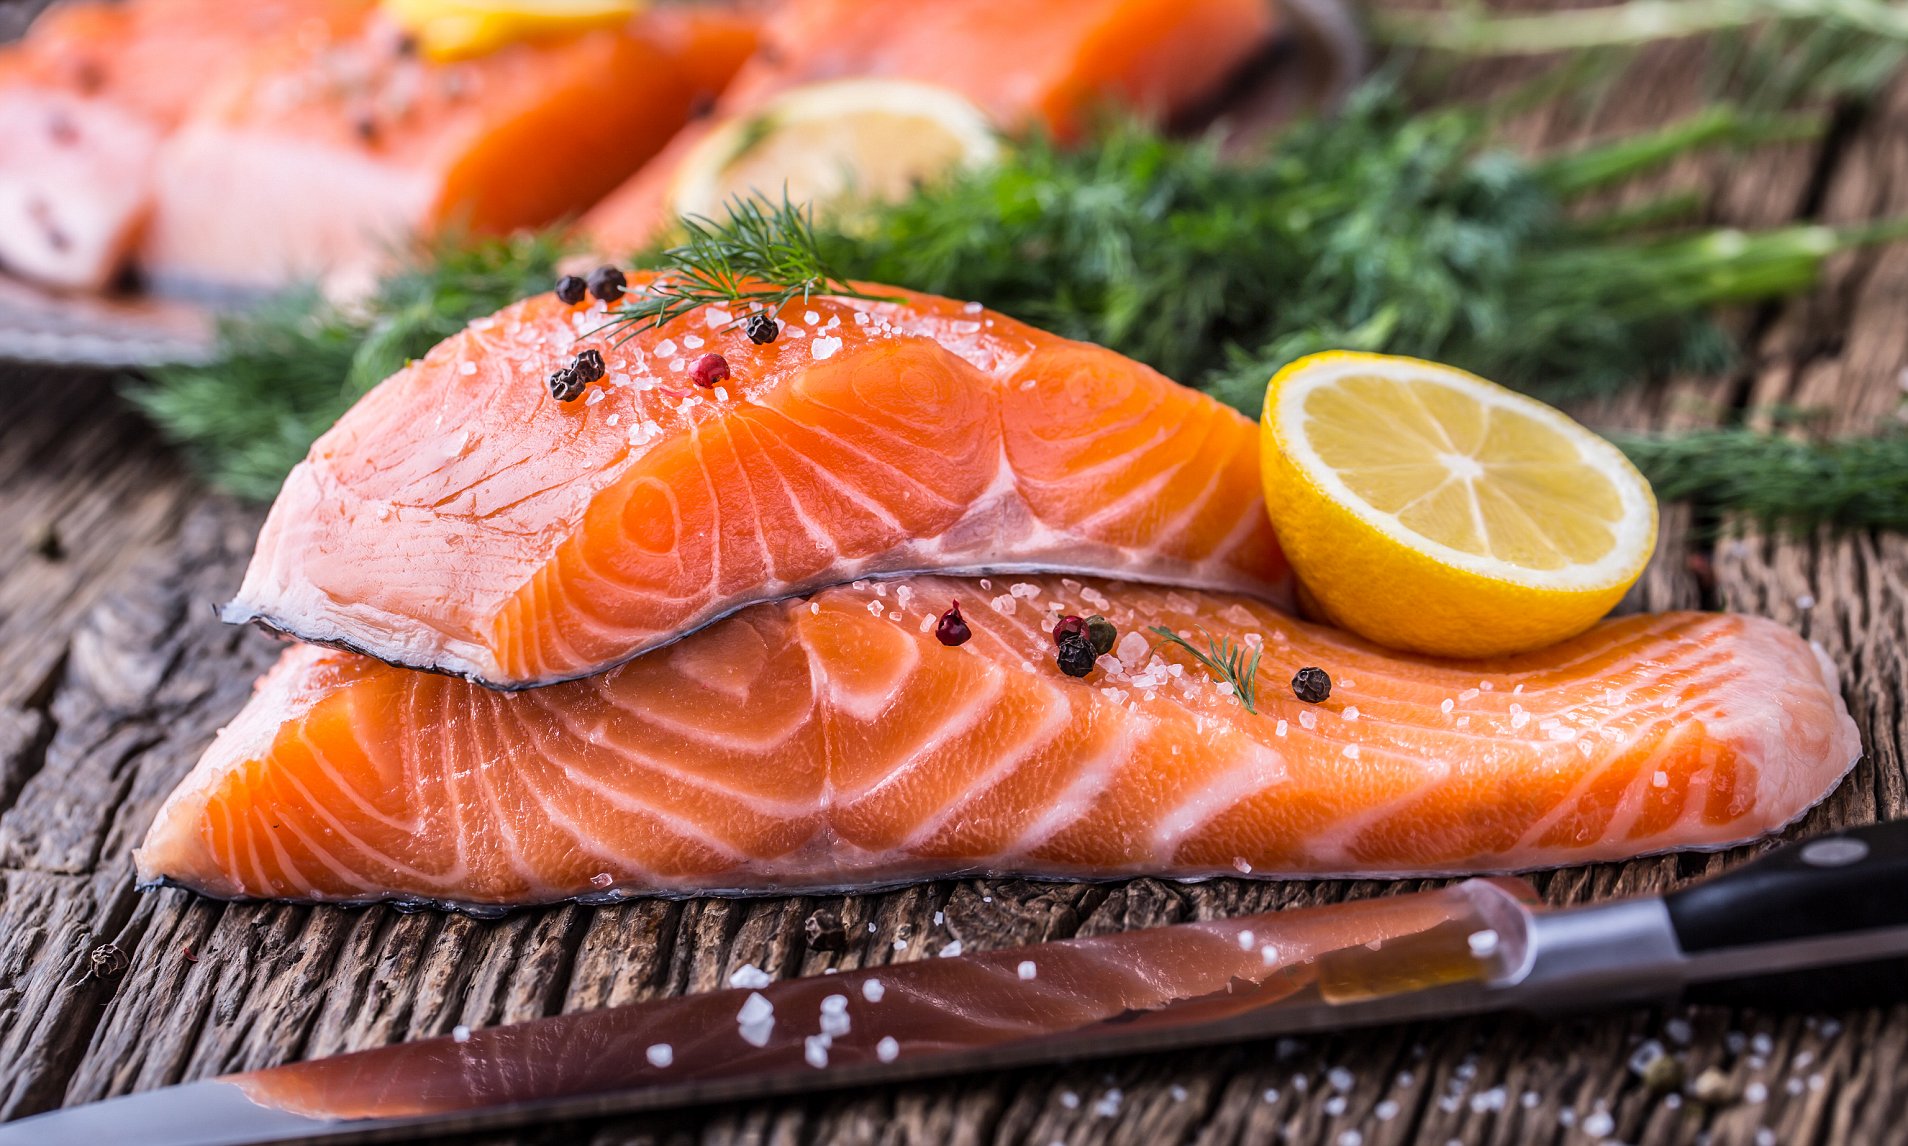 Cá béo: Các loại cá béo như cá thu, cá hồi rất giàu acid béo omega-3 lành mạnh. Các acid béo này có thể kích hoạt giải phóng oxit nitric, từ đó làm tăng lưu lượng máu của bạn.